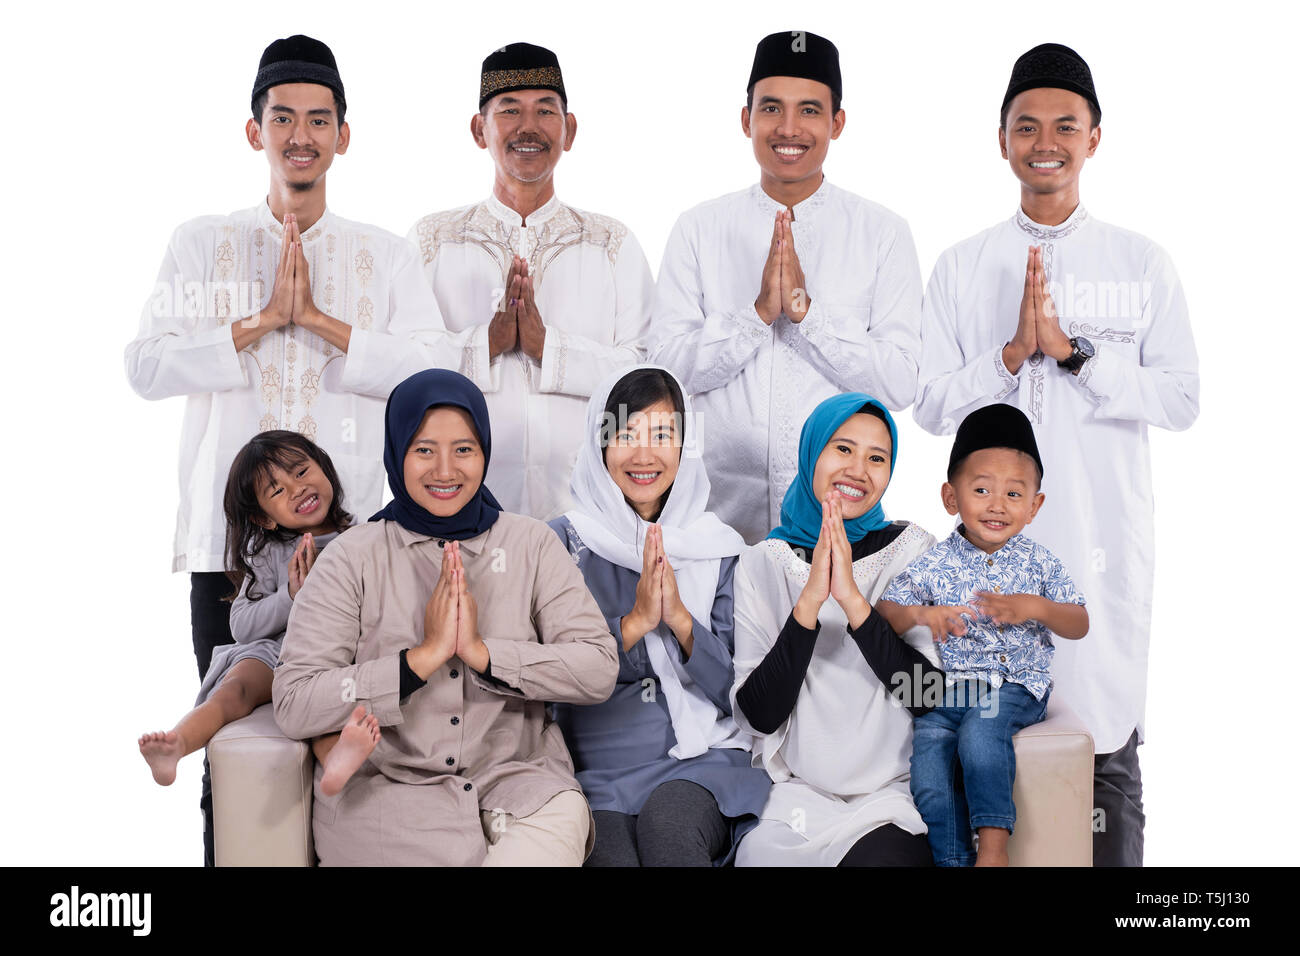 Азия мусульмане. Мусульманская семья в Азии. Семья мусульман азиаты. Малайзия мусульмане азиаты. Фото семьи мусульман много детей.